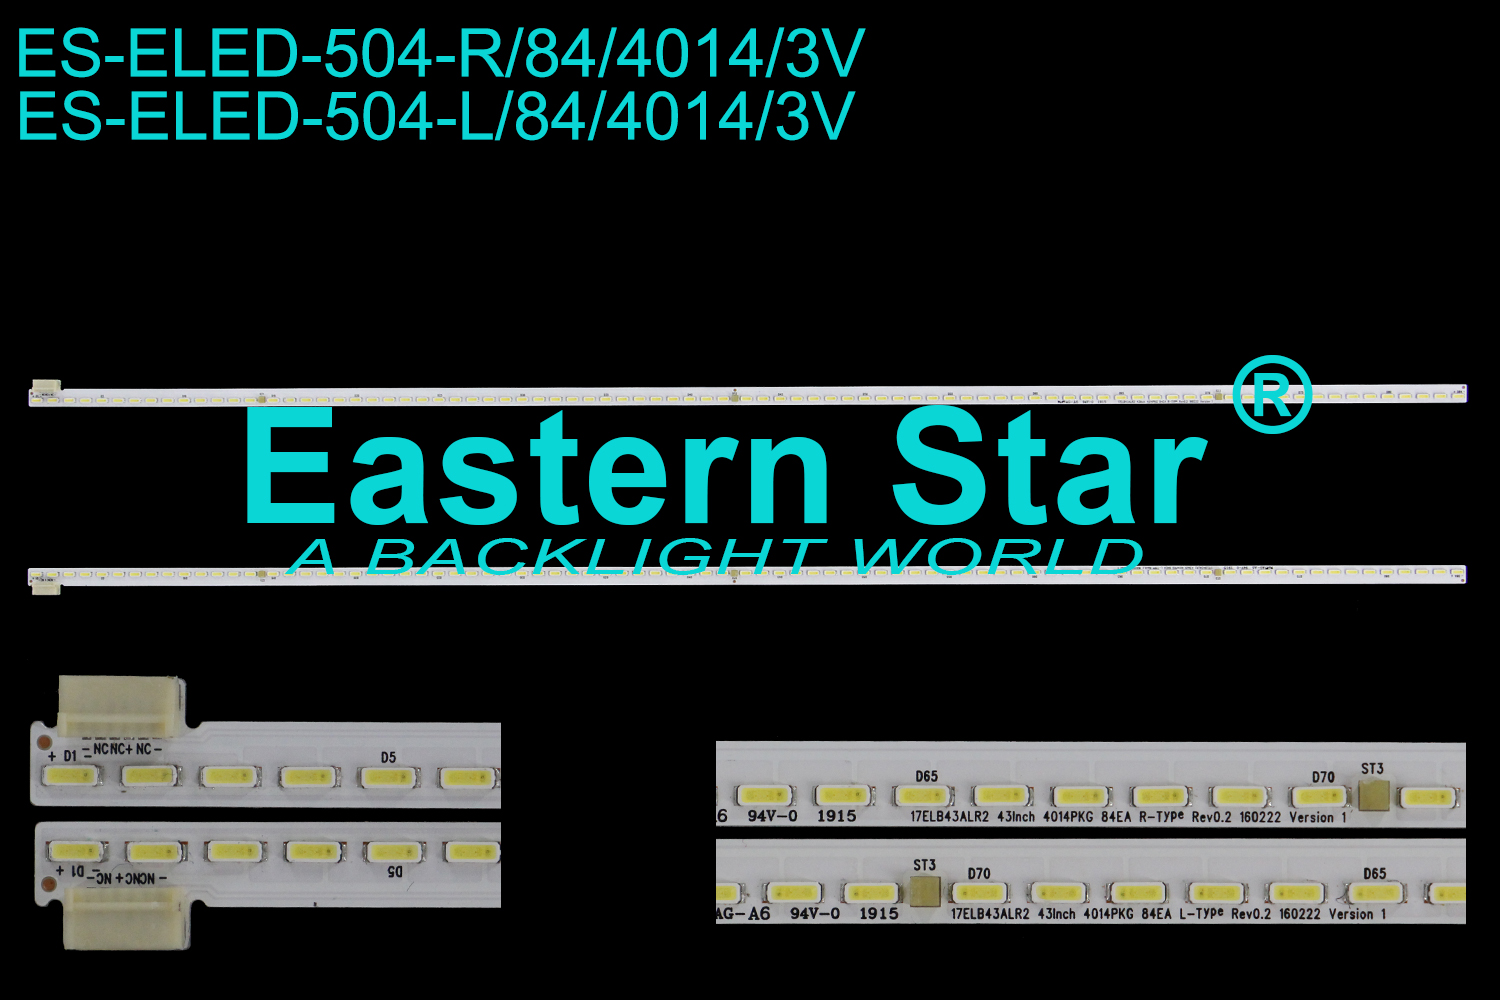 ES-ELED-504 ELED/EDGE TV backlight use for 43'' Vestel  43UD9300, 43UD9350 L: 17ELB43ALR2 43INCH 4014PKG 84EA L-Type rEV0.2 160222 Version 1   R: 17ELB43ALR2 43INCH 4014PKG 84EA R-Type rEV0.2 160222 Version 1  LED STRIPS(2)